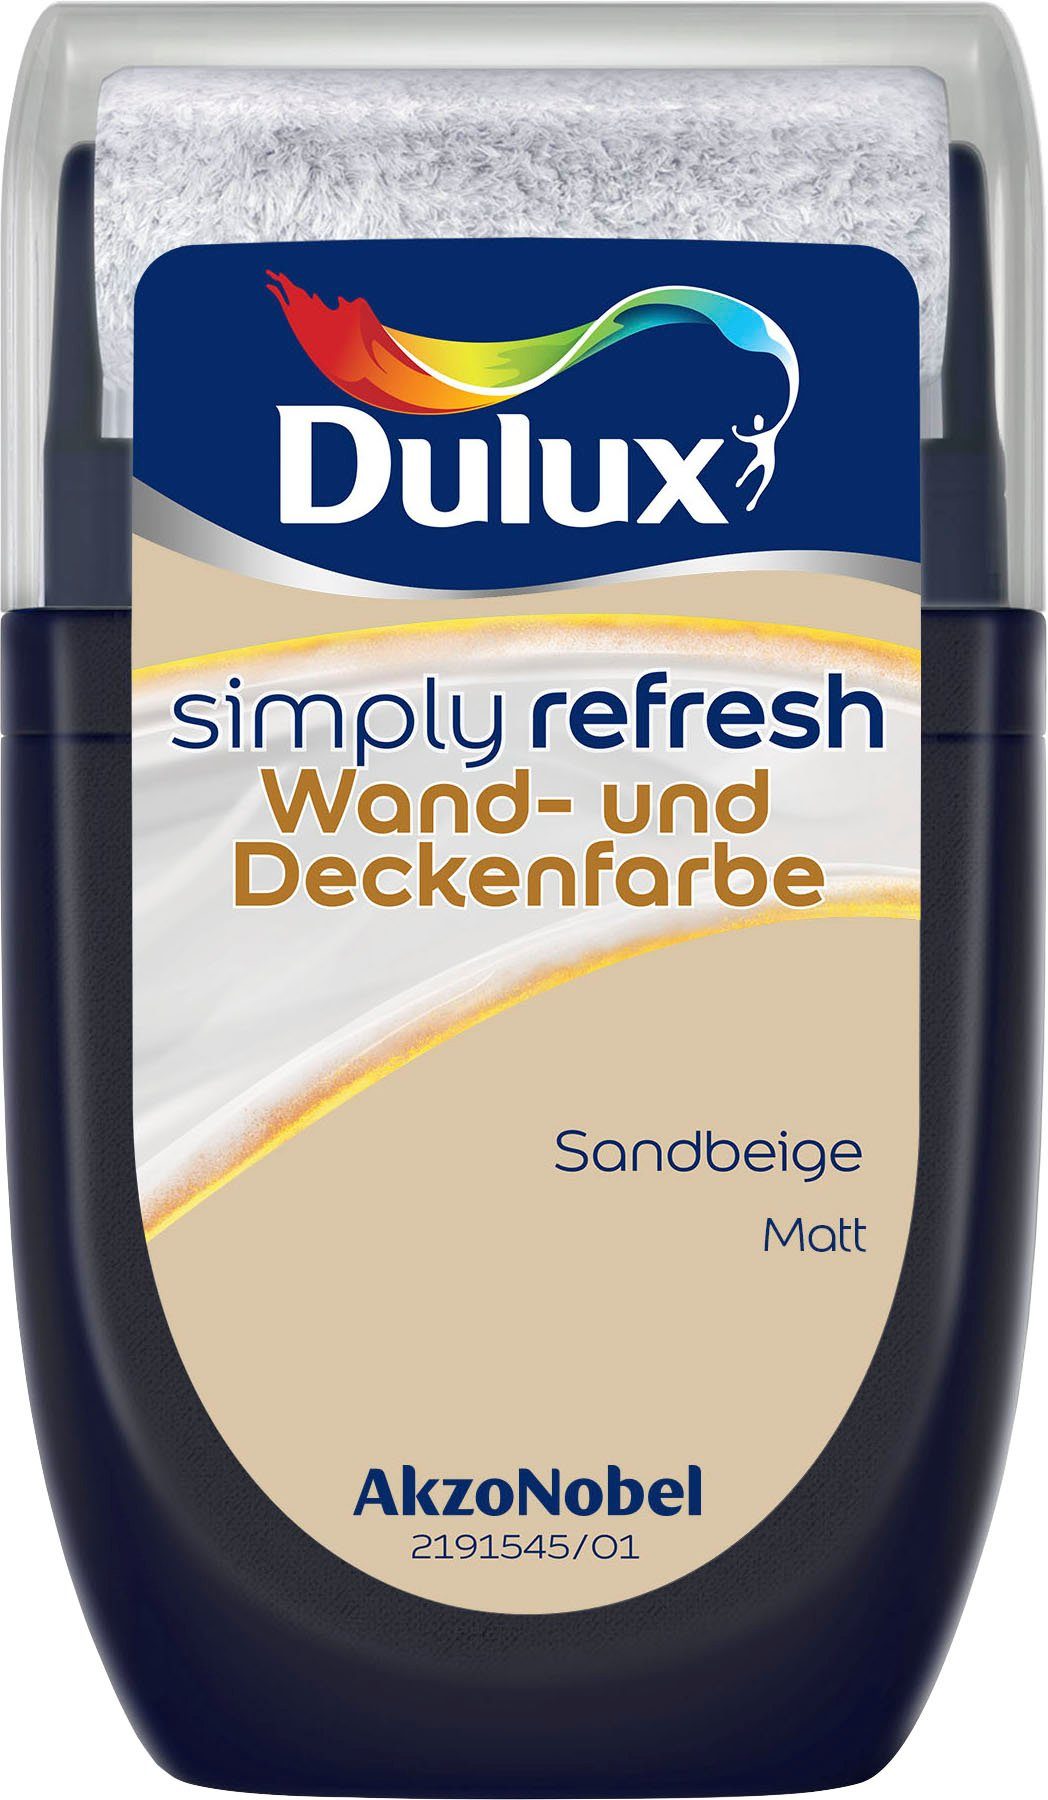 Dulux Deckenfarbe Sandbeige Tester, Wand- ml Refresh, 30 matt, Simply hochdeckend, und